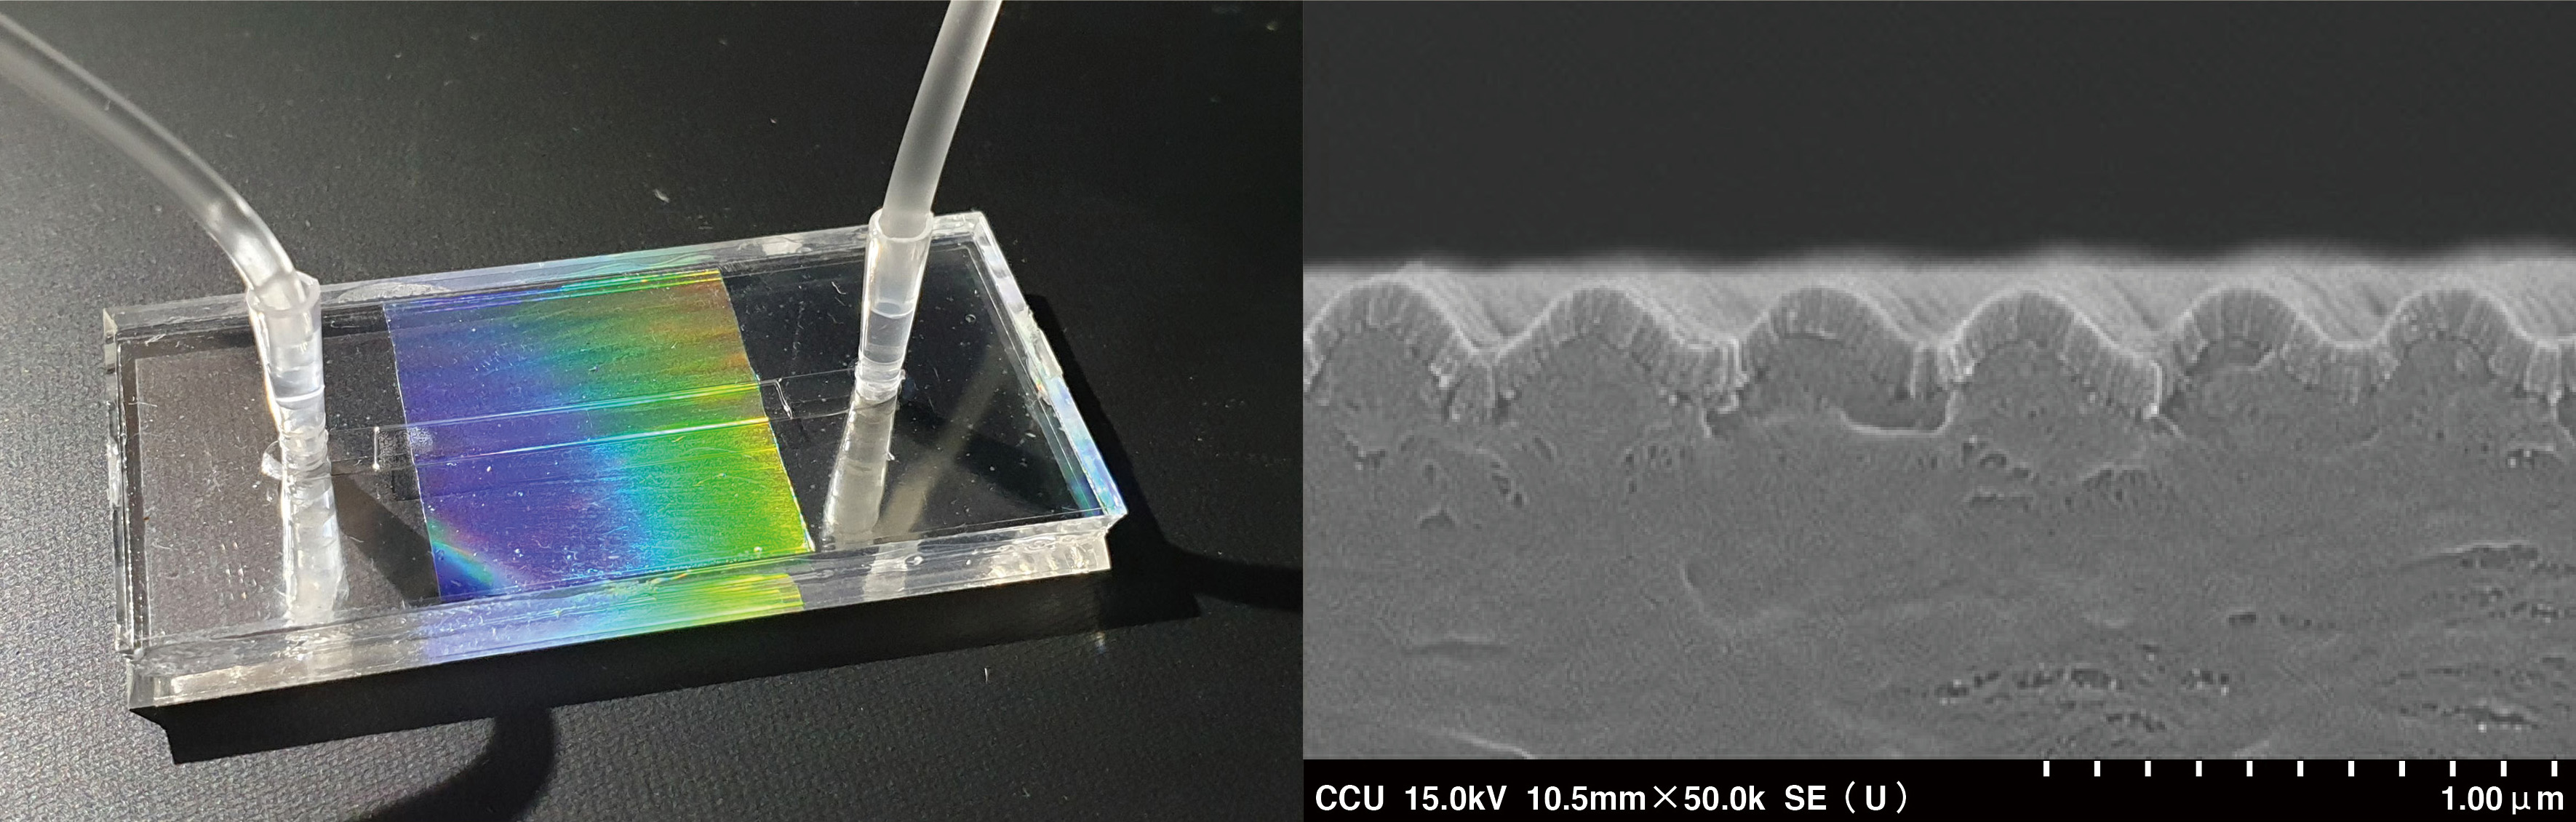 張國恩教授團隊研發的泛用型液體檢測技術可製作具有波浪狀的奈米結構（圖右），且是用獨家的塑膠射出成型技術製作（圖左），有很高的應用推廣性。